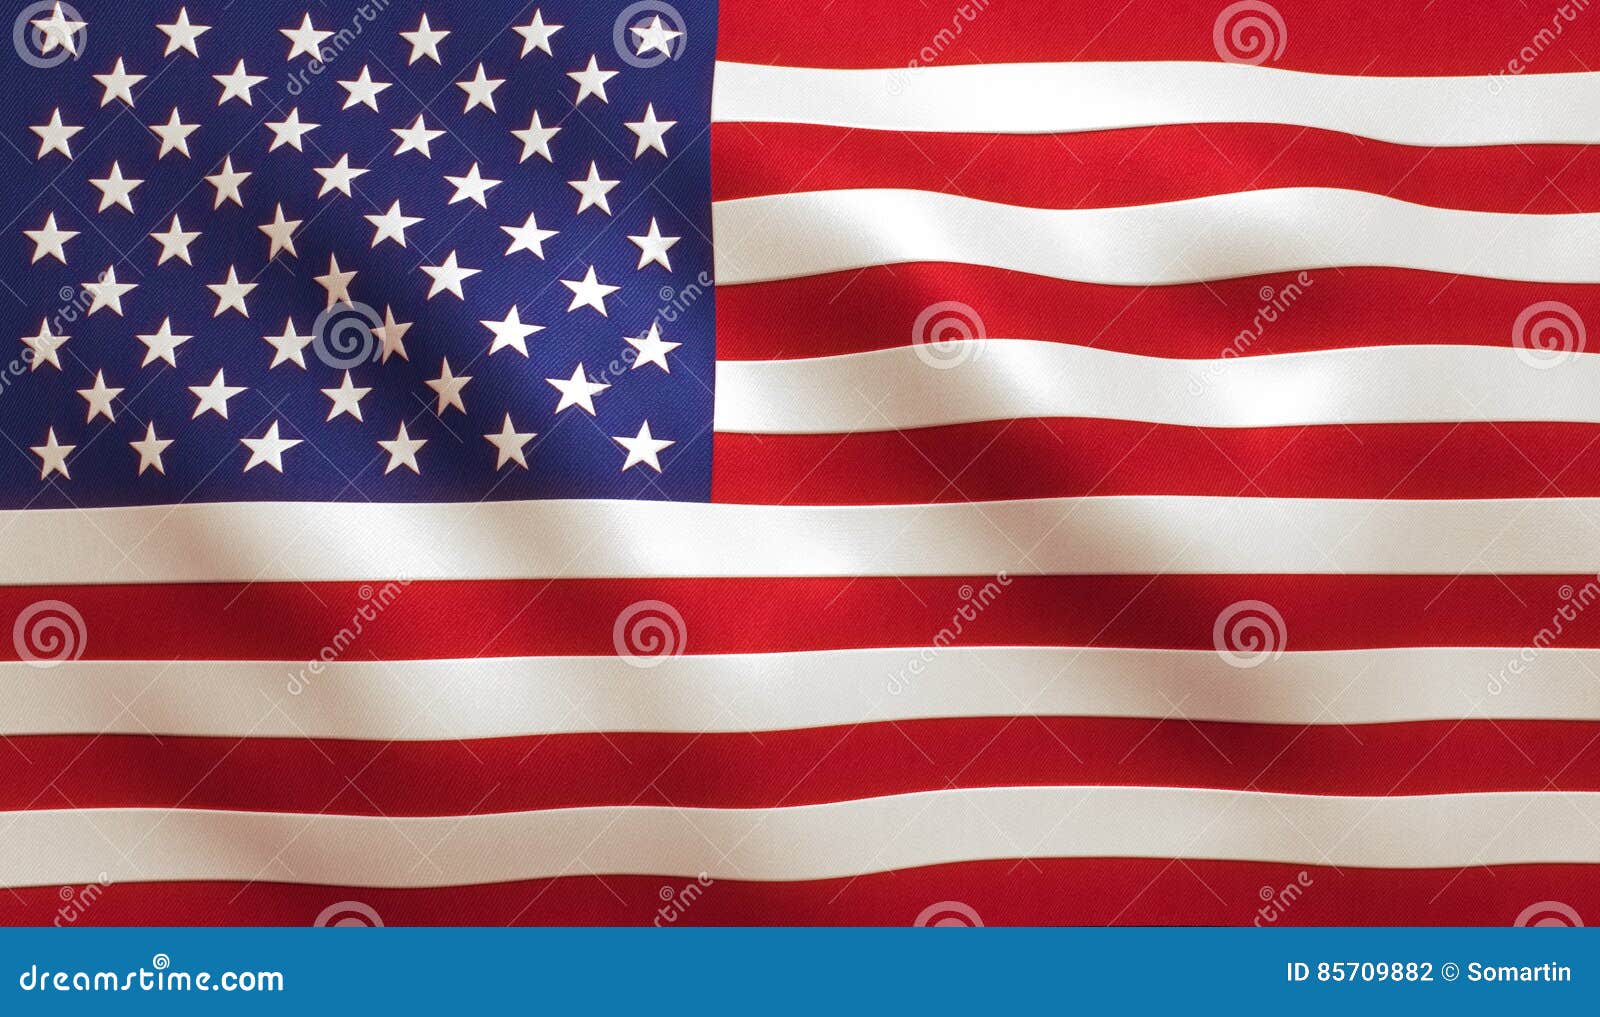 american flag usa